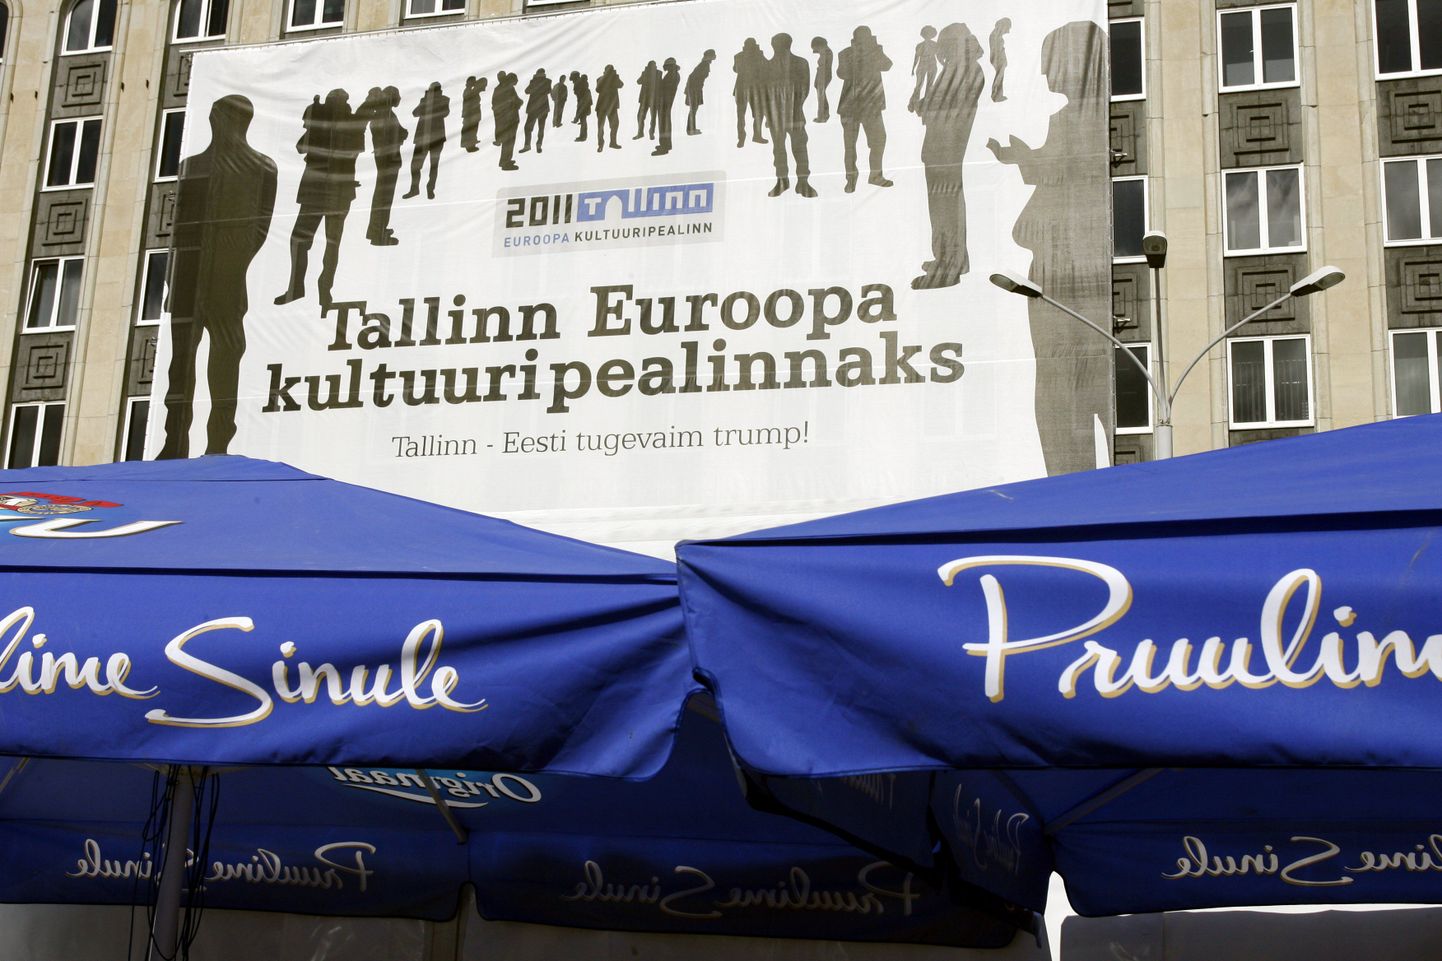 Plakat ajast, kui Tallinn alles kandideeris Euroopa kultuuripealinnaks.